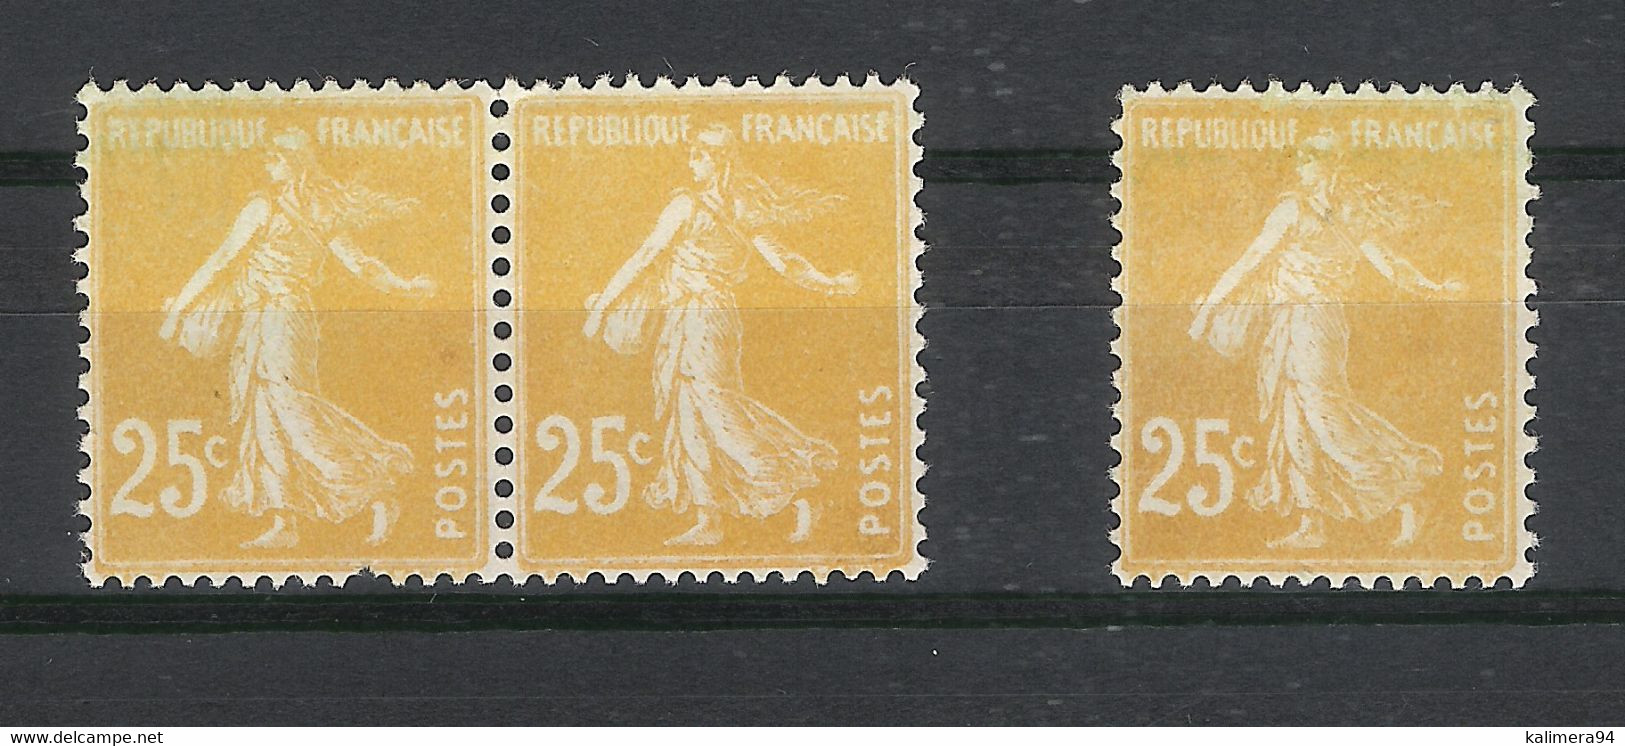 Y. & T.  N° 235  /  Variété De Coloris Sur 3 Timbres  /  Type SEMEUSE Fond Plein ( Couleur Jaune-orange Très Clair ) - Unused Stamps